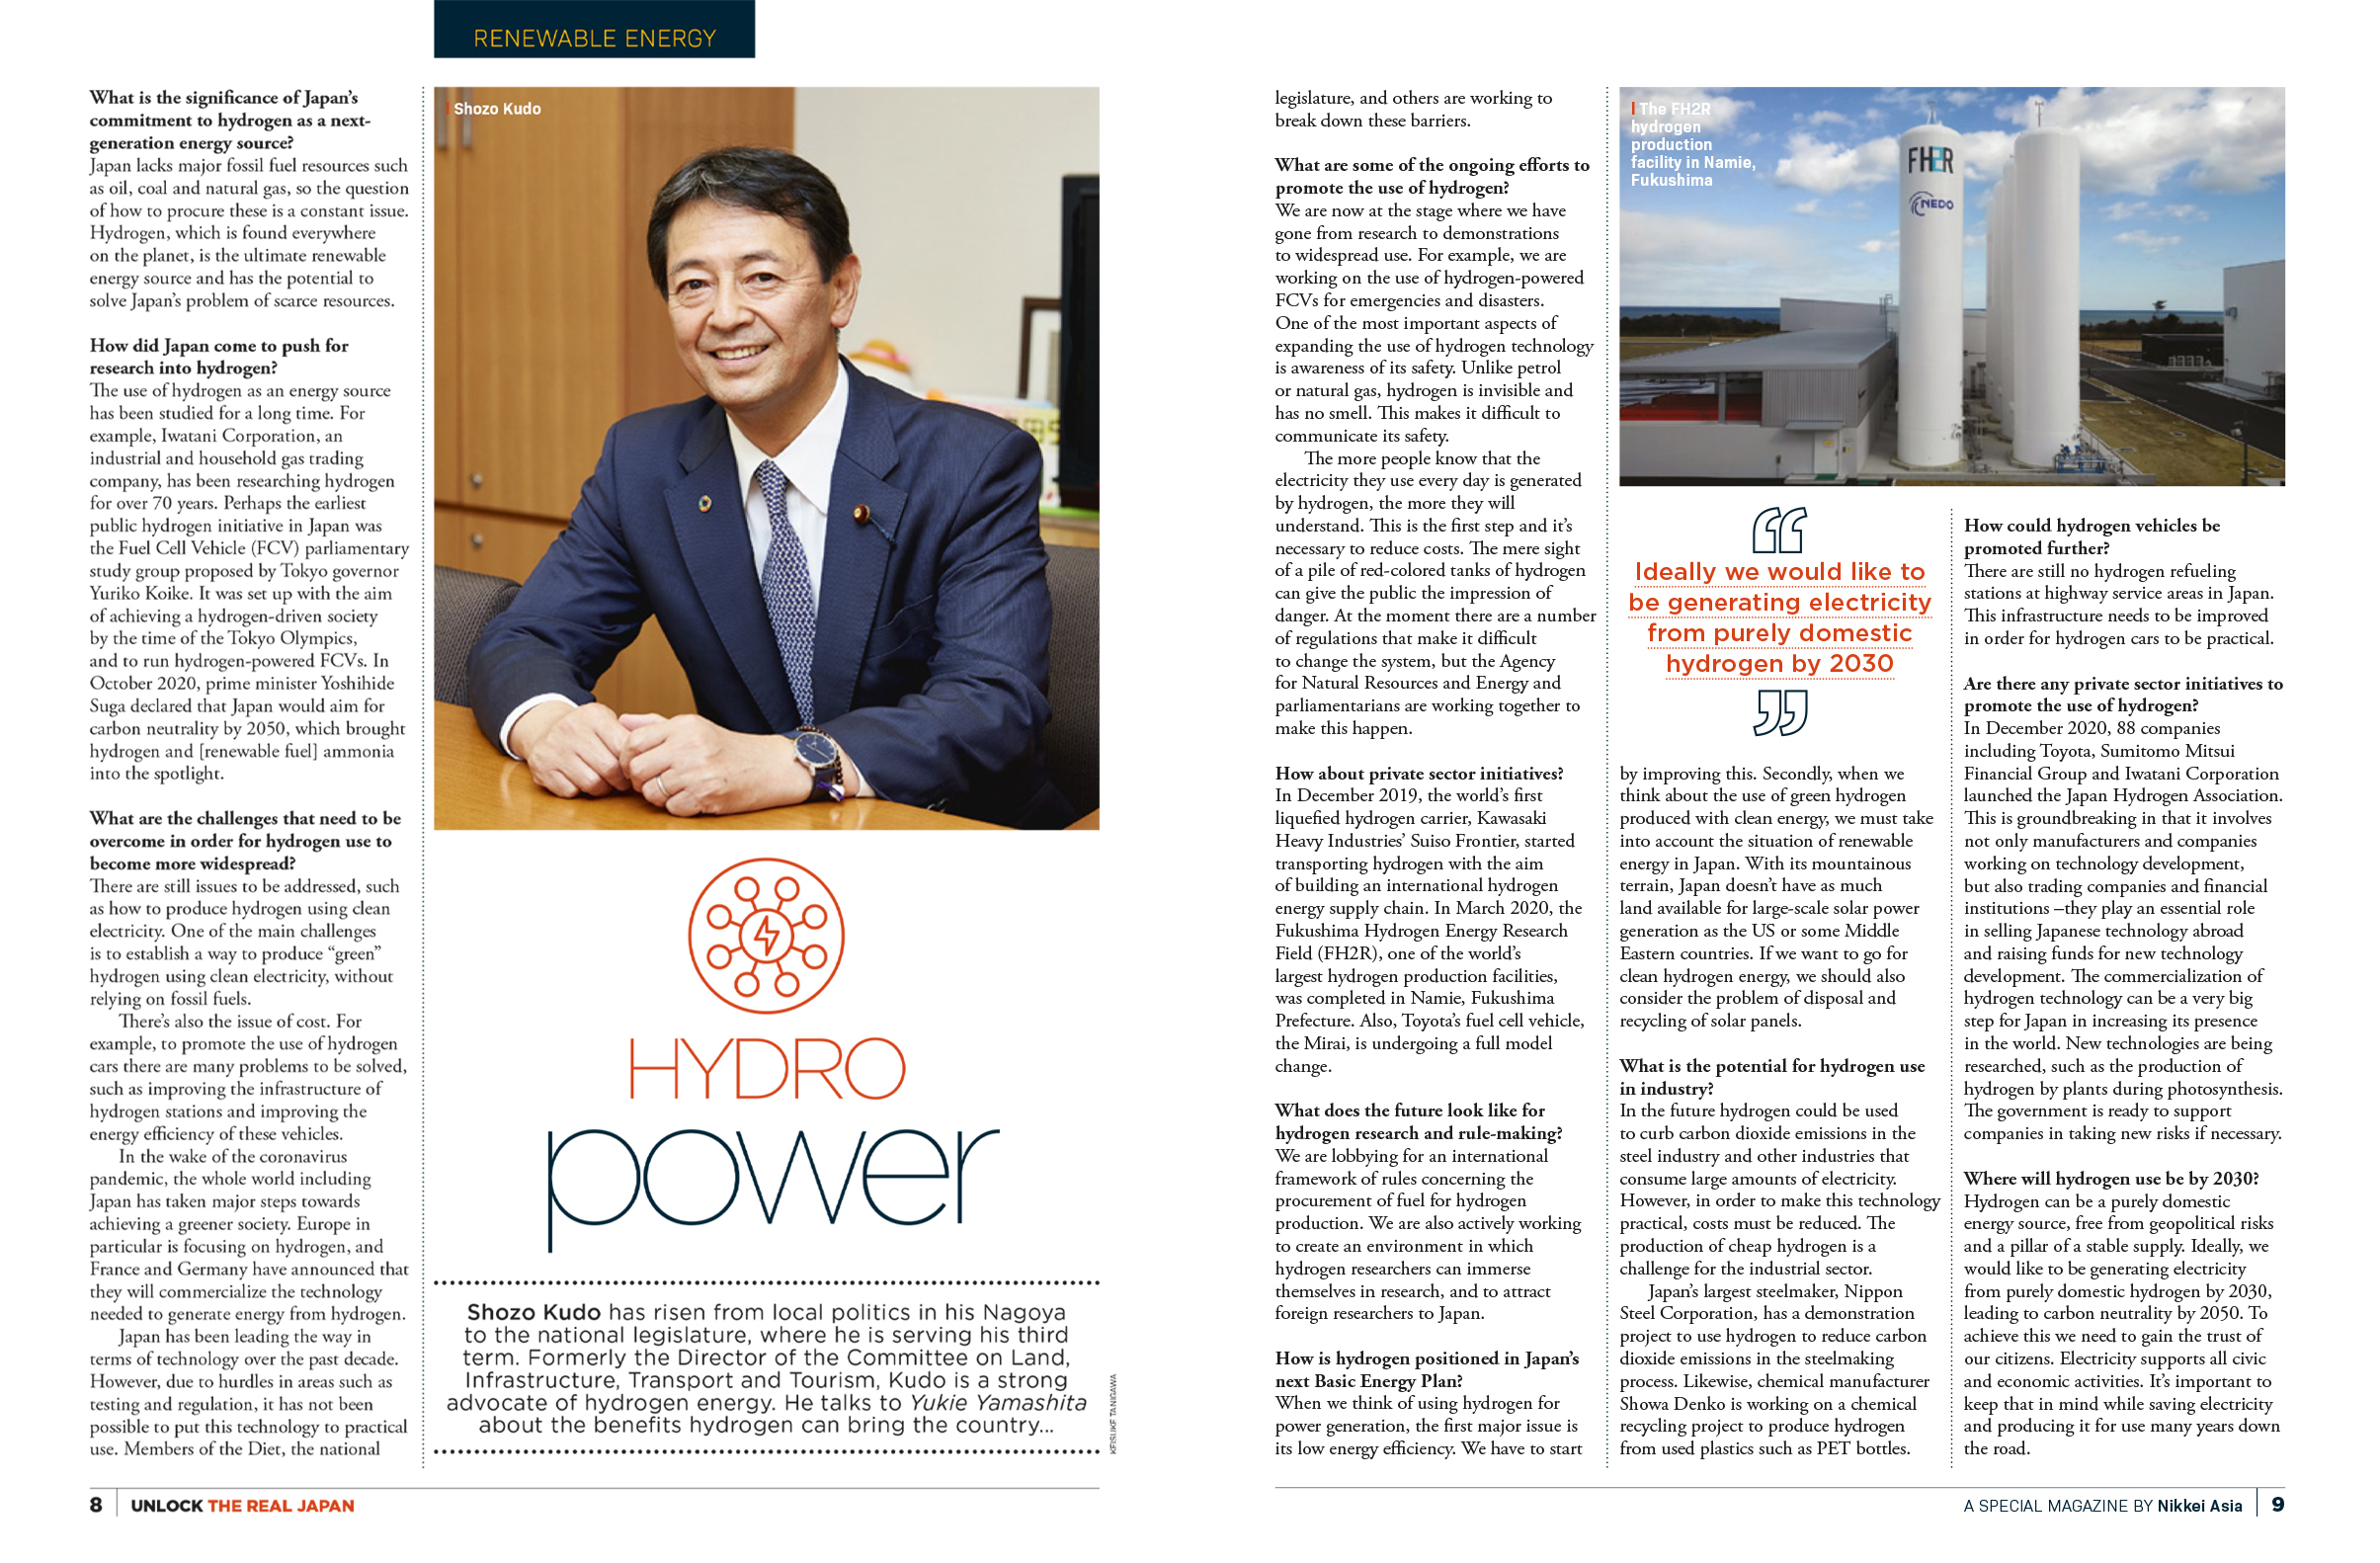 タイムアウト東京、日本経済新聞社『Nikkei Asia』とのコラボレーションでアジアのビジネスリーダーをターゲットとした情報誌『UNLOCK THE REAL JAPAN』の第4号をリリースのサブ画像6_日本の水素エネルギーの取り組みを紹介